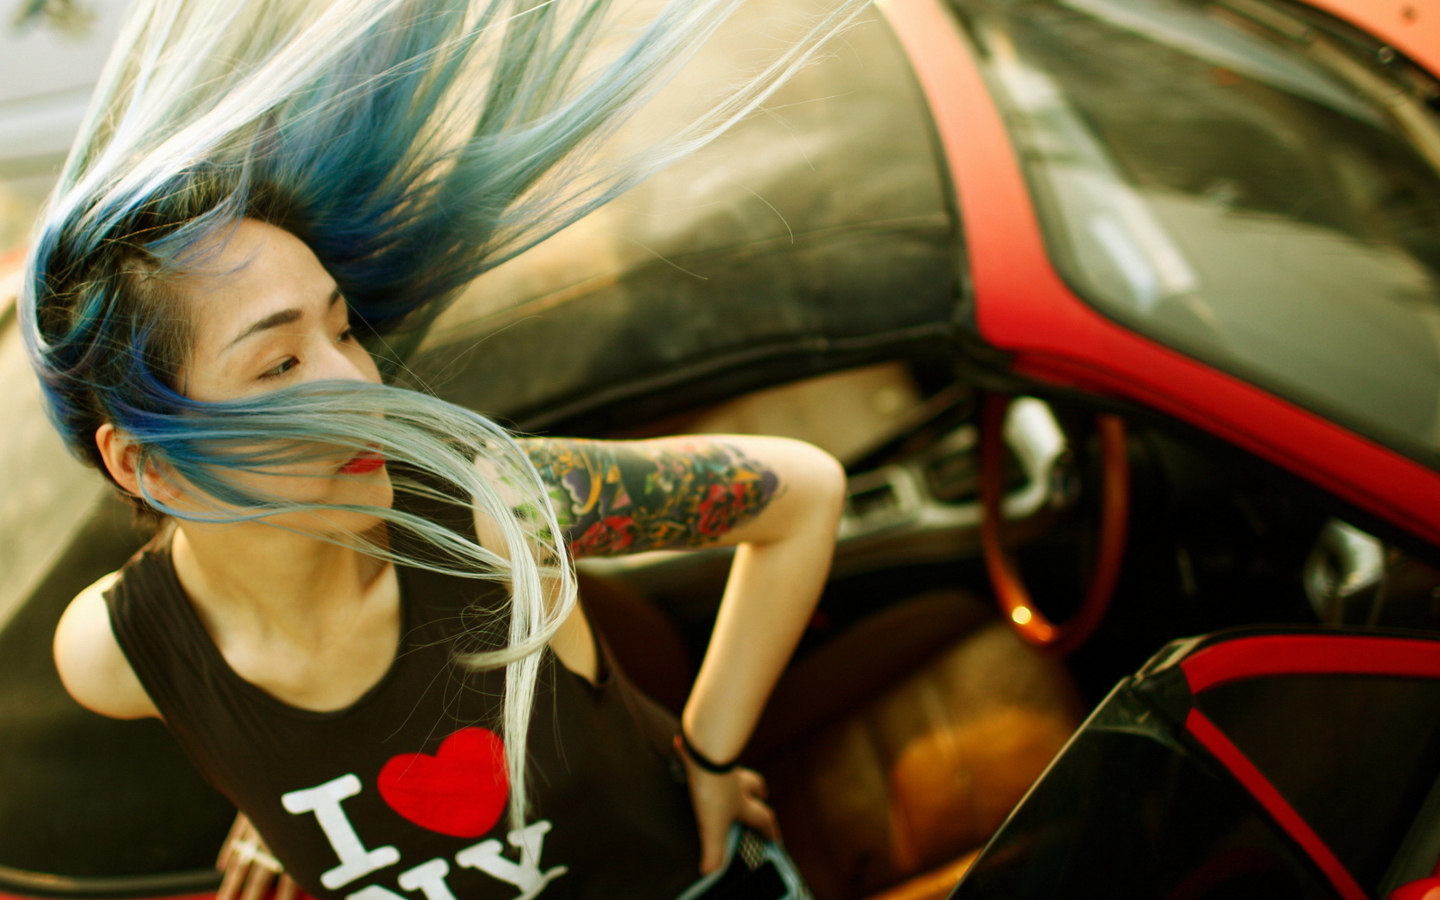 Обои Cool Asian Girl With Blue Hair & I Love NY T-shirt 1440x900